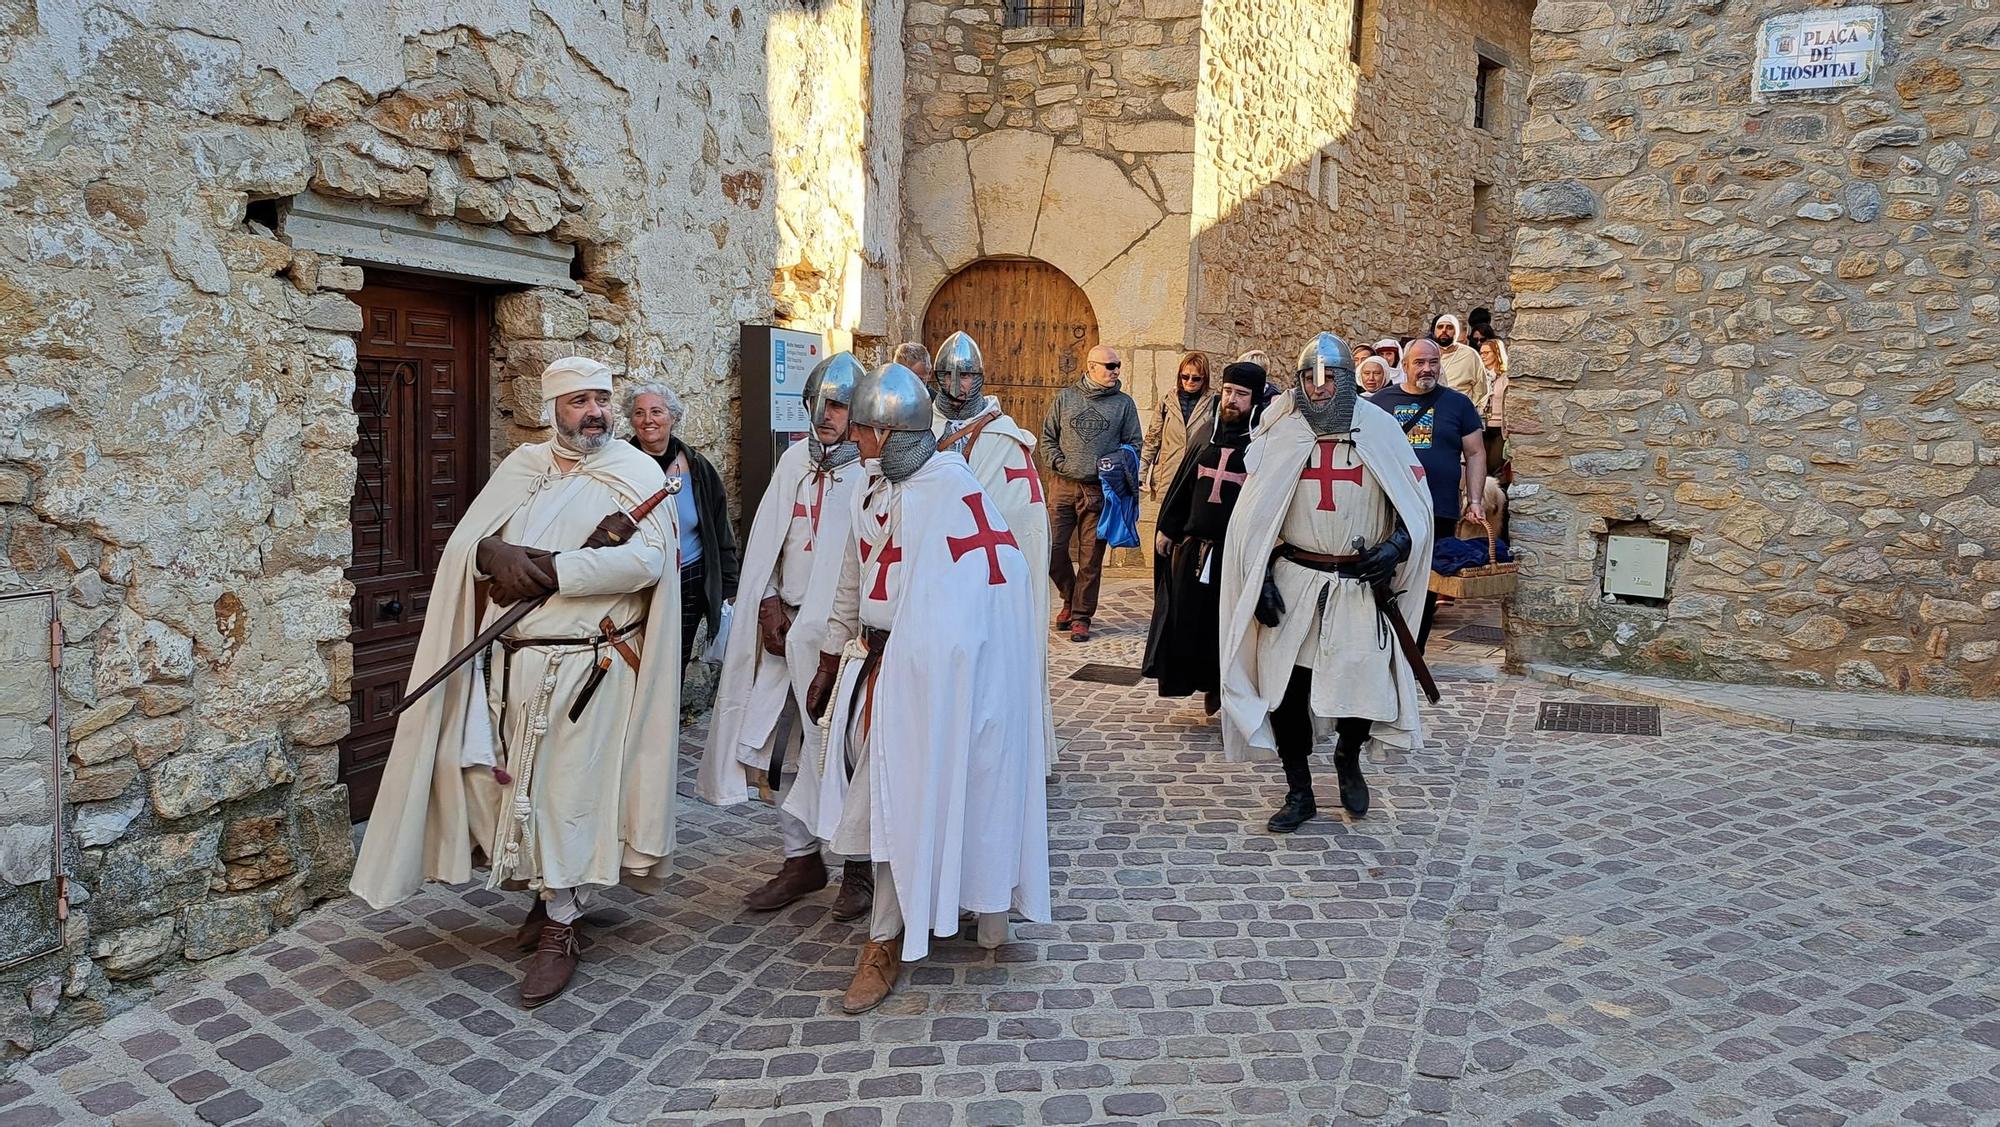 GALERÍA | Culla regresa al medievo del 1233 con su gran recreación histórica